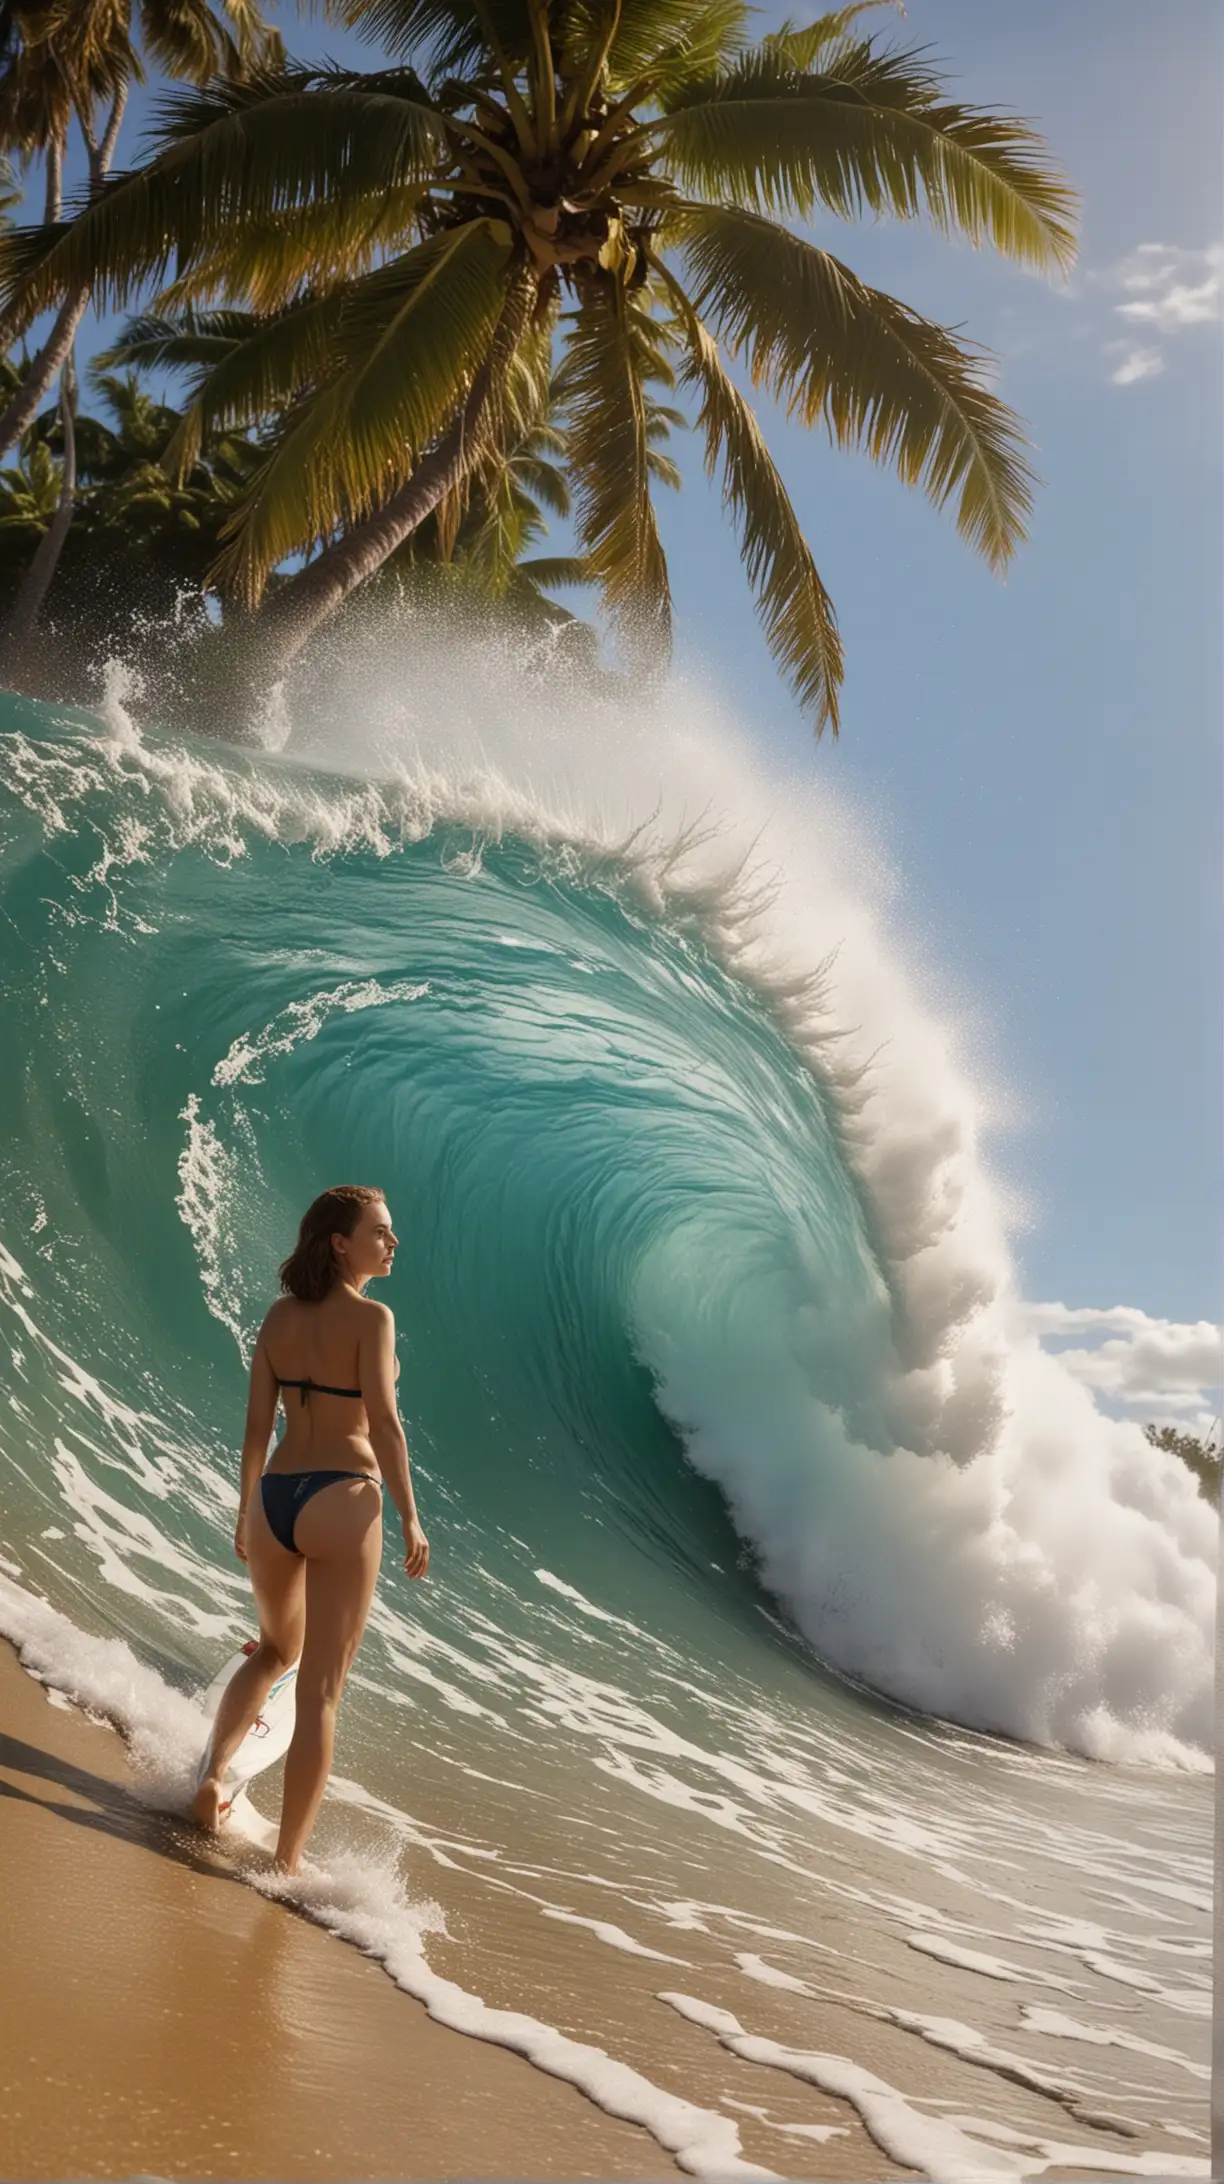 Natalie Portman, en gros plan ,nue sous un maillot de bain brésilien, elle fait du surf, elle est dans le tube d’une vague énorme, ambiance hawaï, ciel bleu à peine nuageux, grand soleil, plage, cocotiers, paillottes,  photographie, réaliste